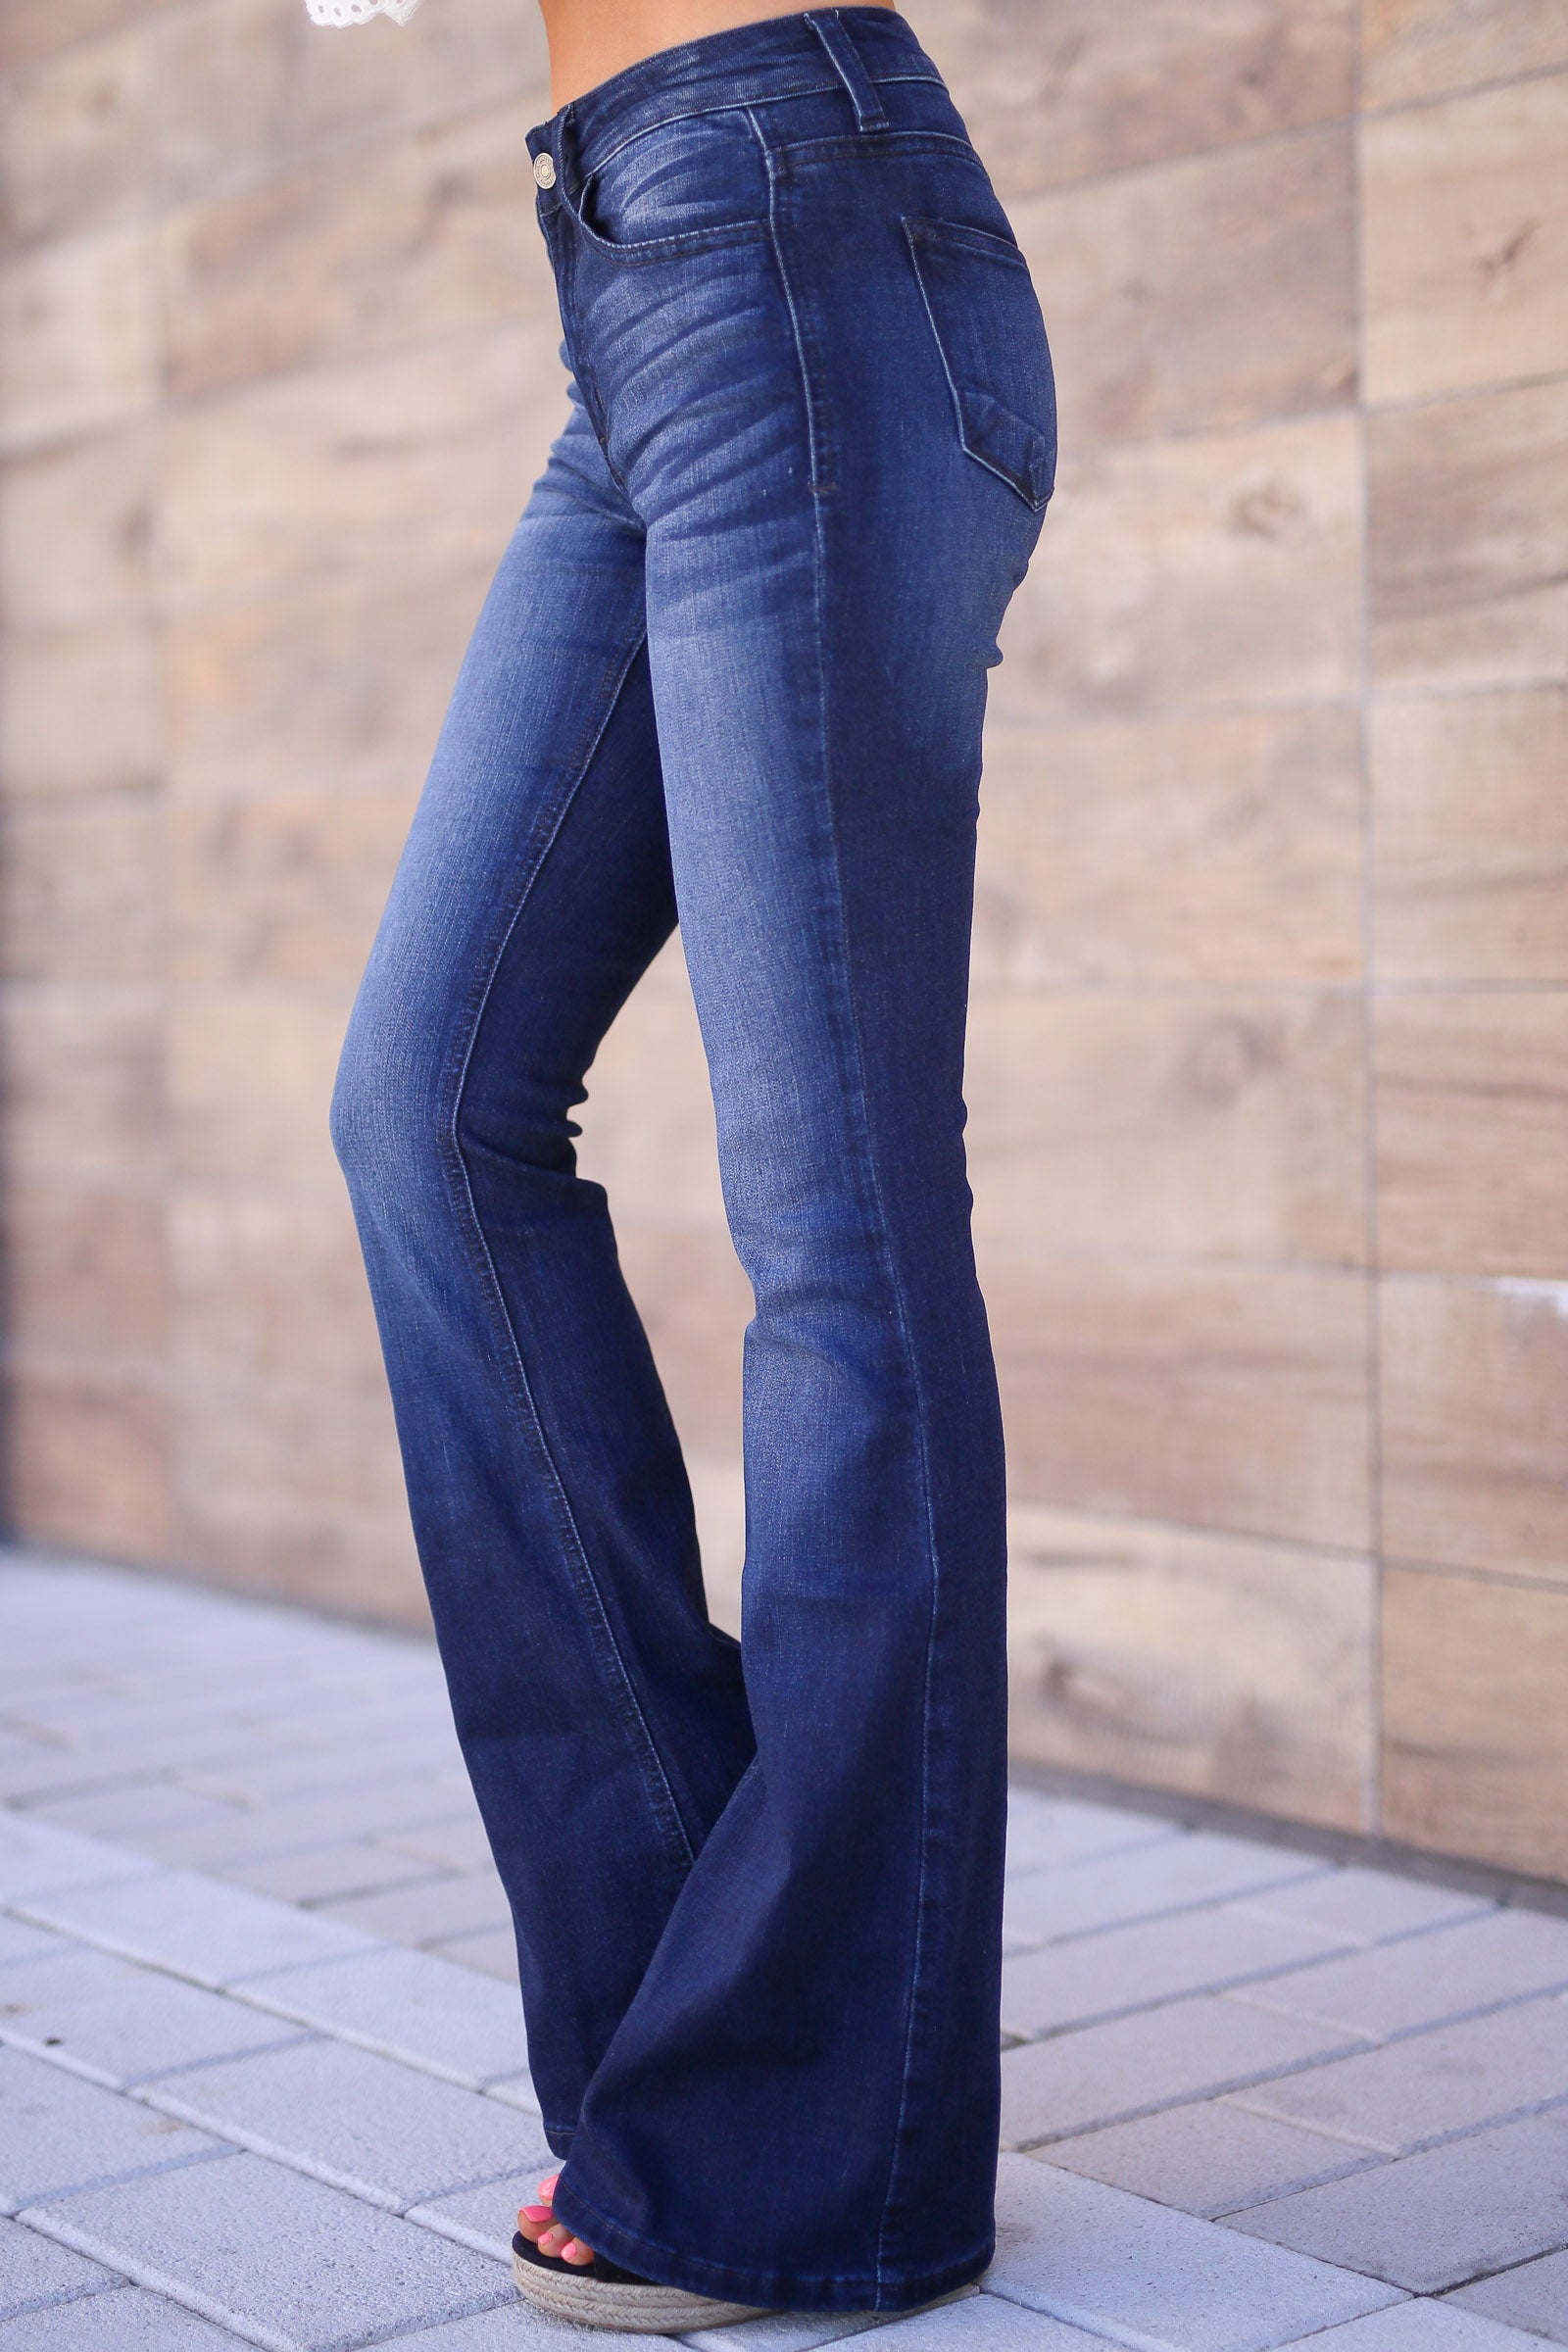 wrangler jeans 2019